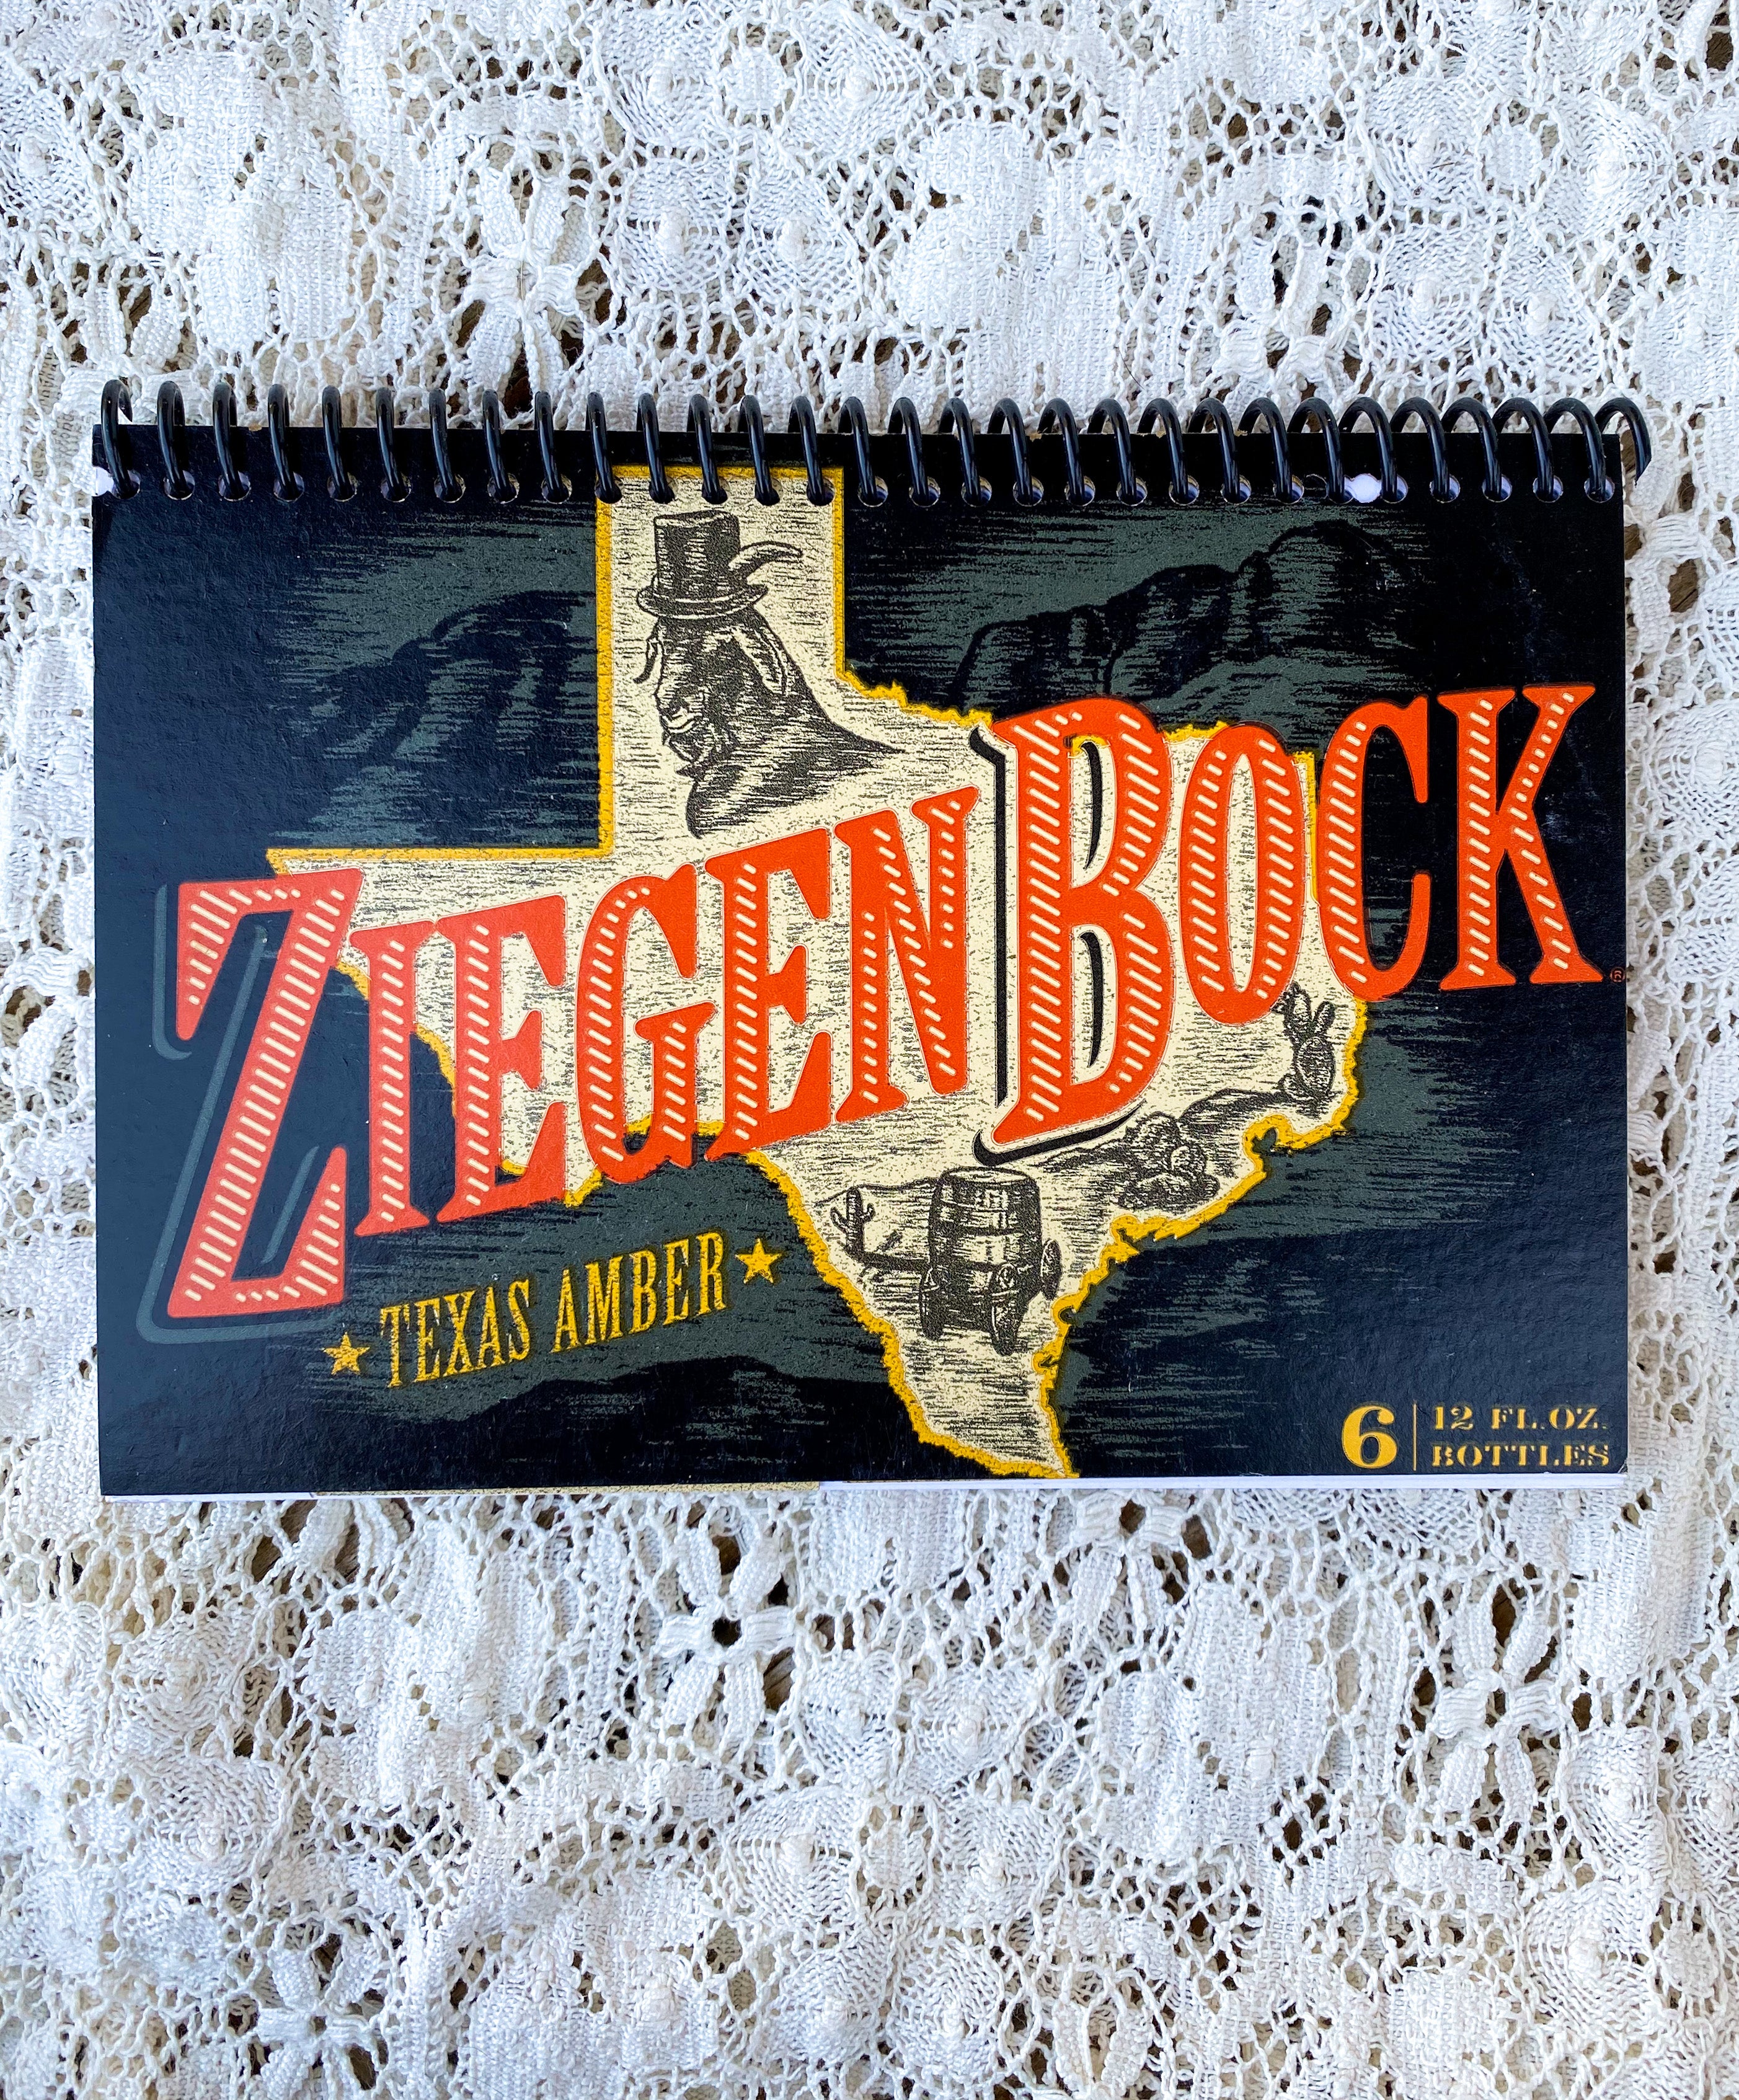 Ziegen Bock Texas Amber Recycled Beer Carton Notebook